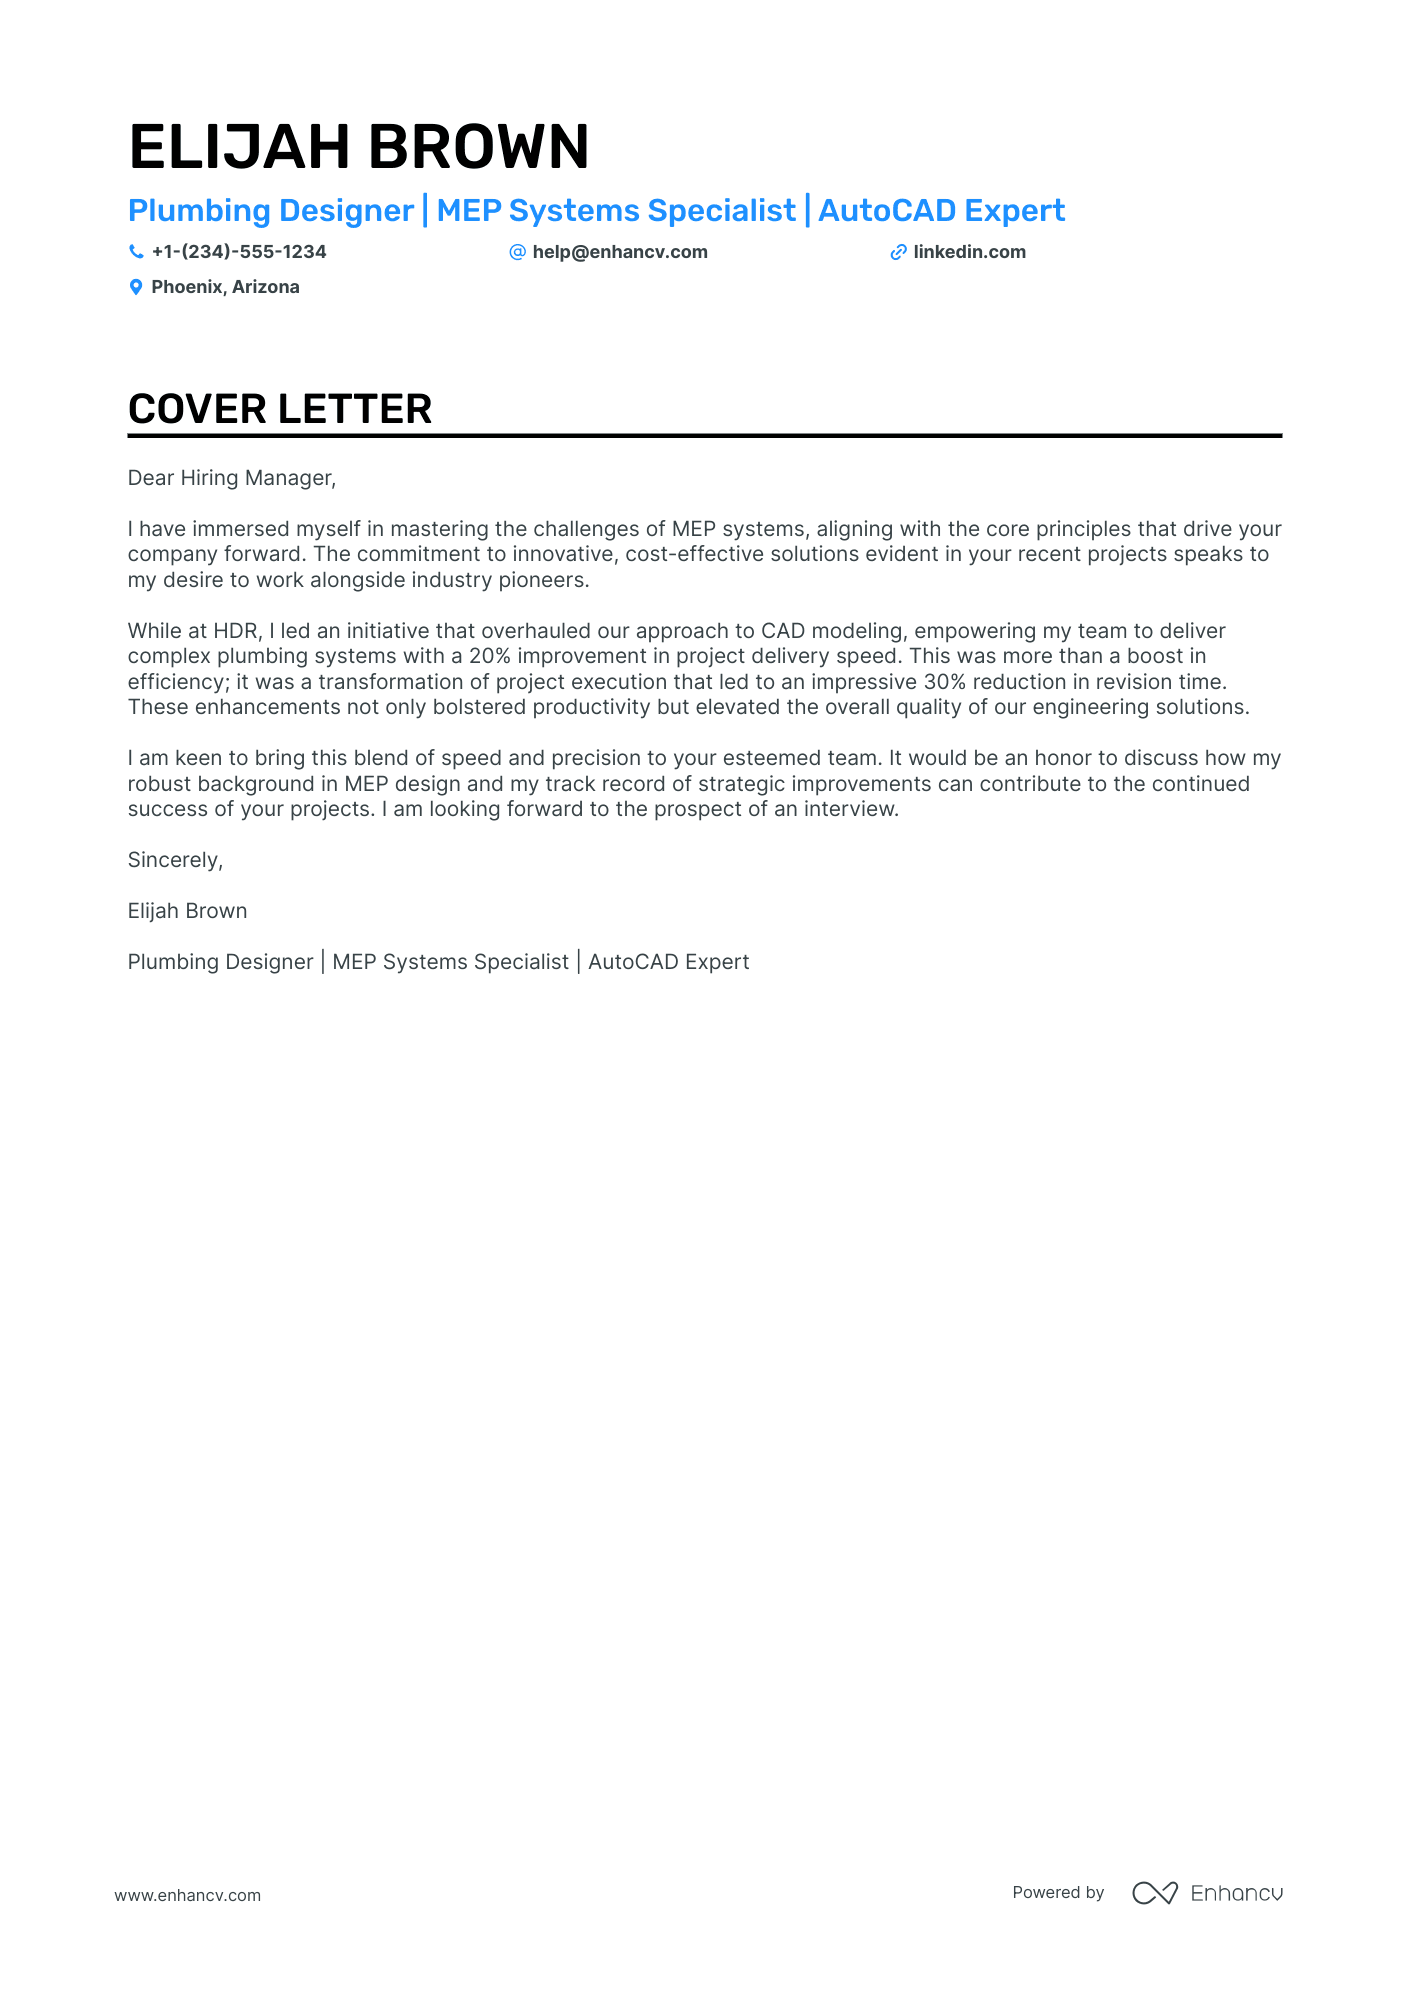 Plumbing Designer cover letter